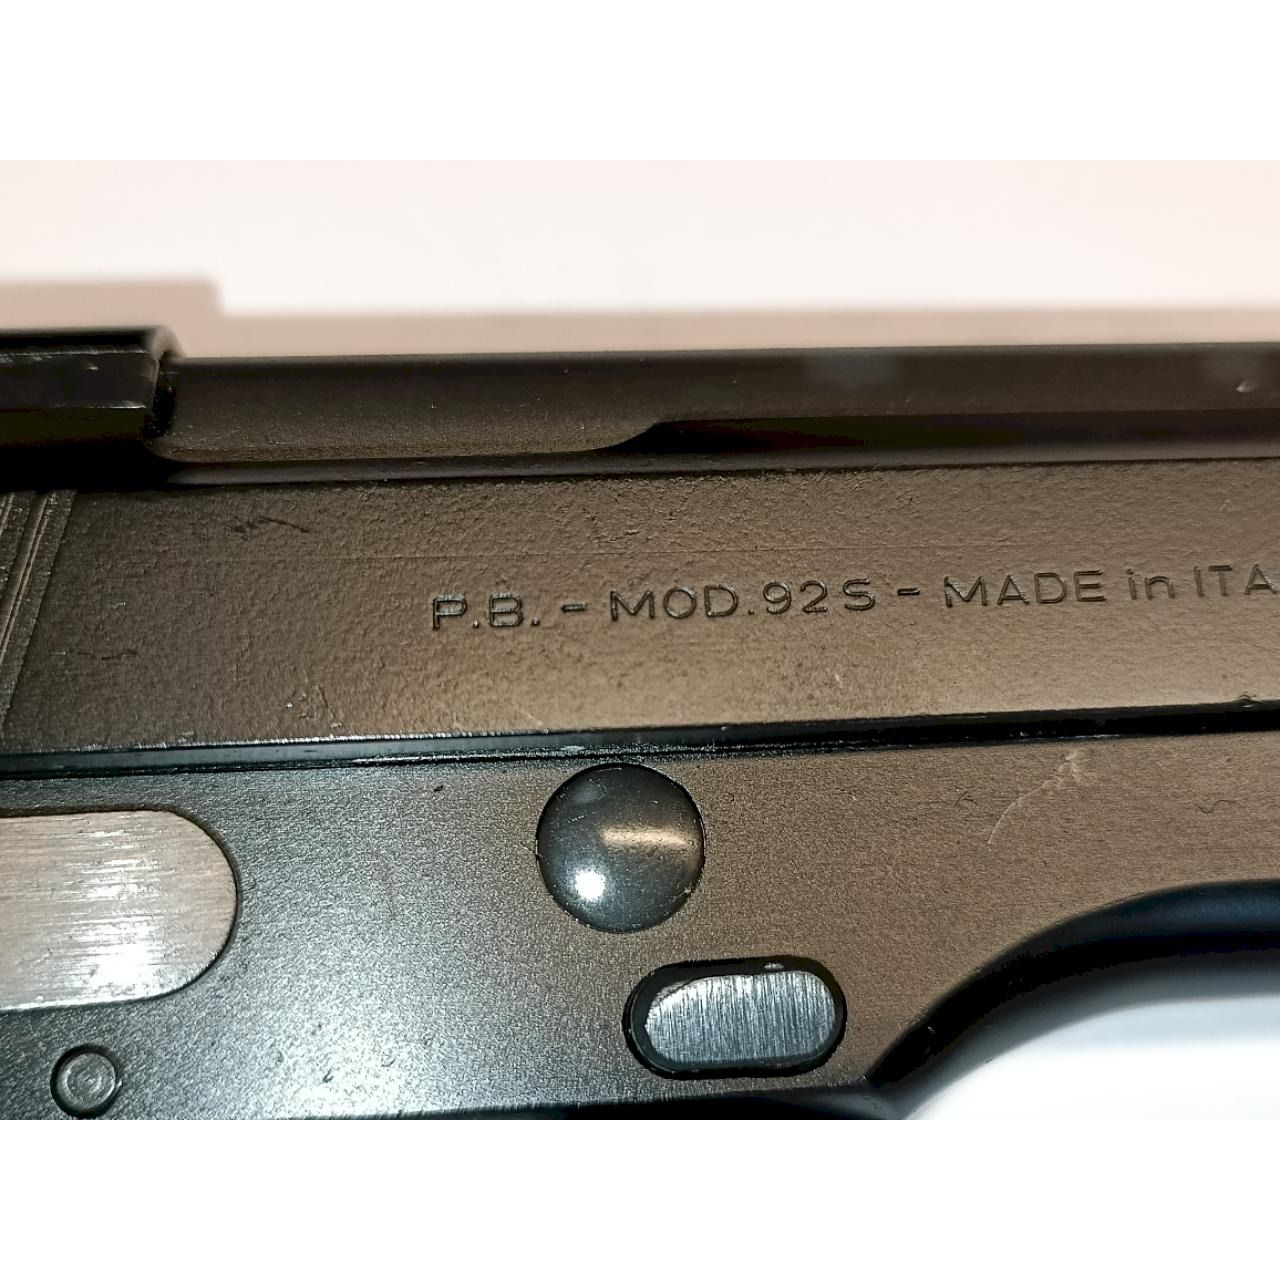 Beretta 92 S Italienische Behördenwaffe 9x19Para